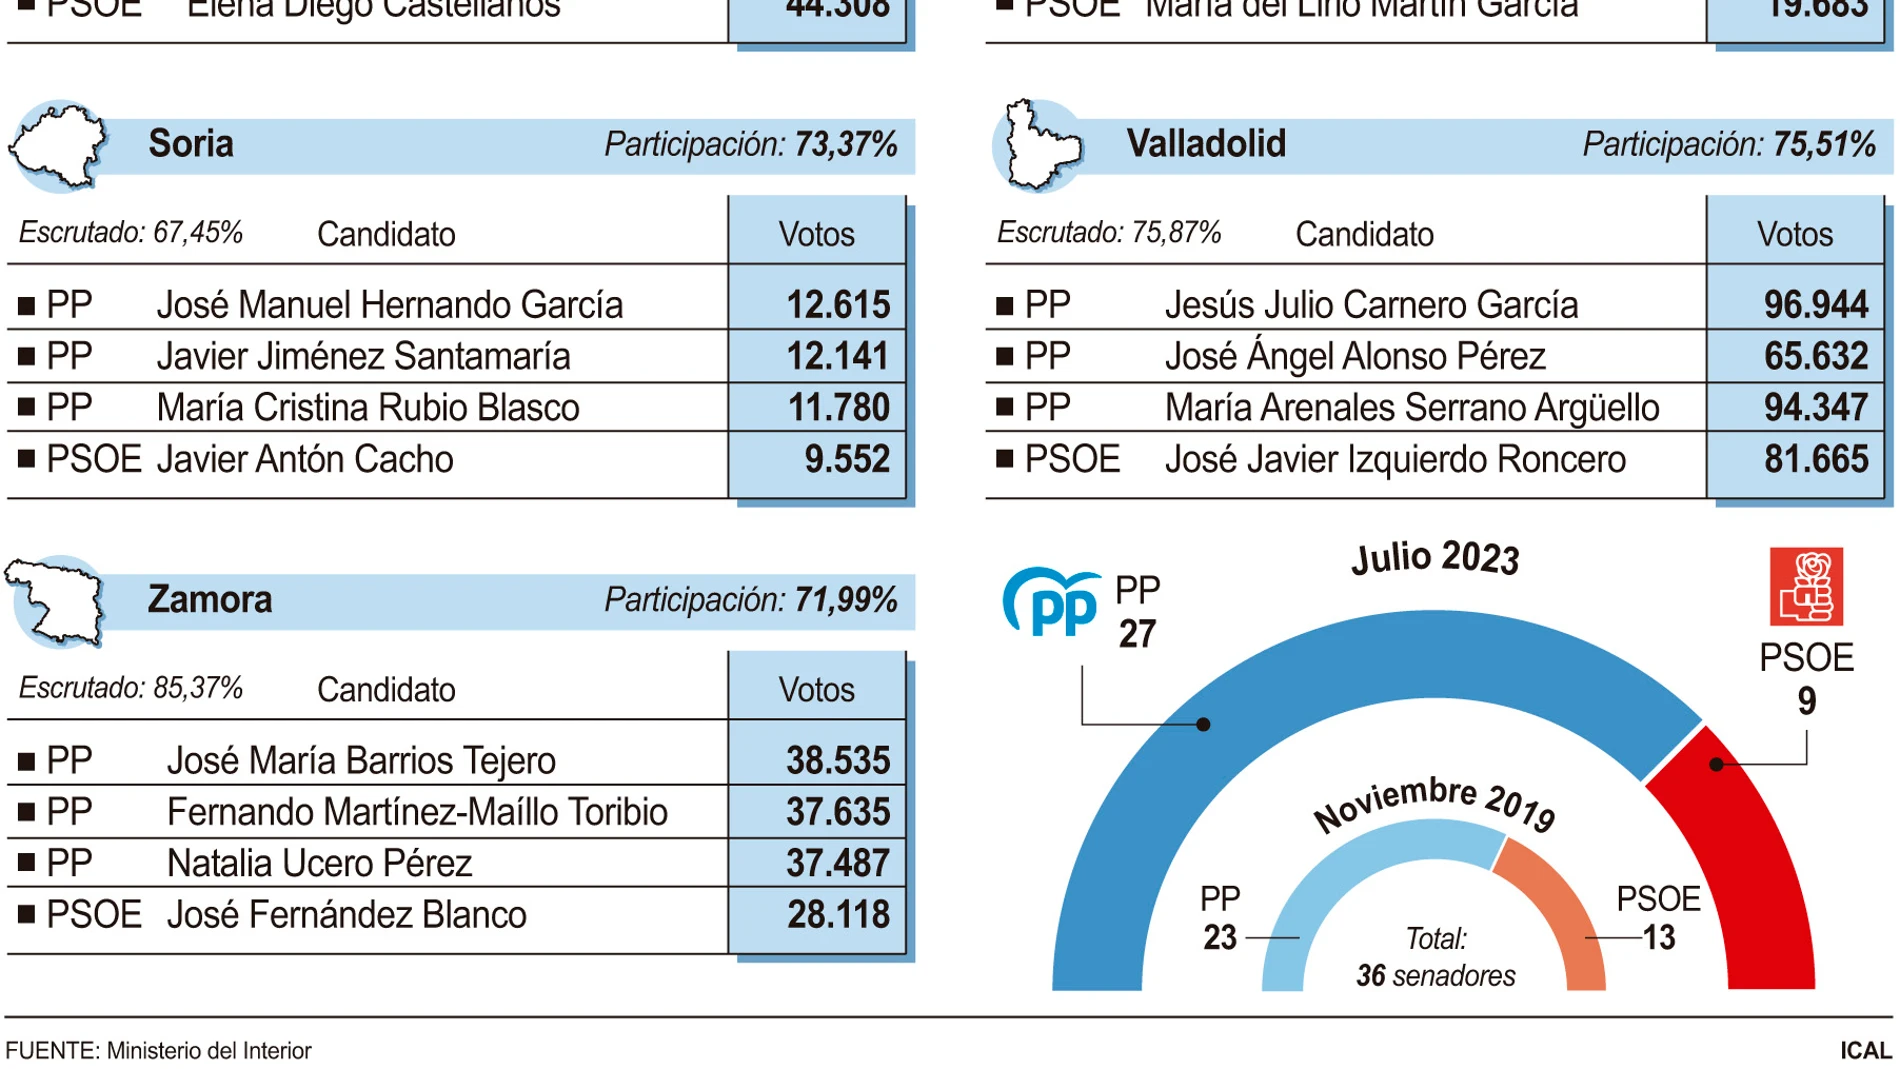 Gráfico de los senadores de Castilla y León